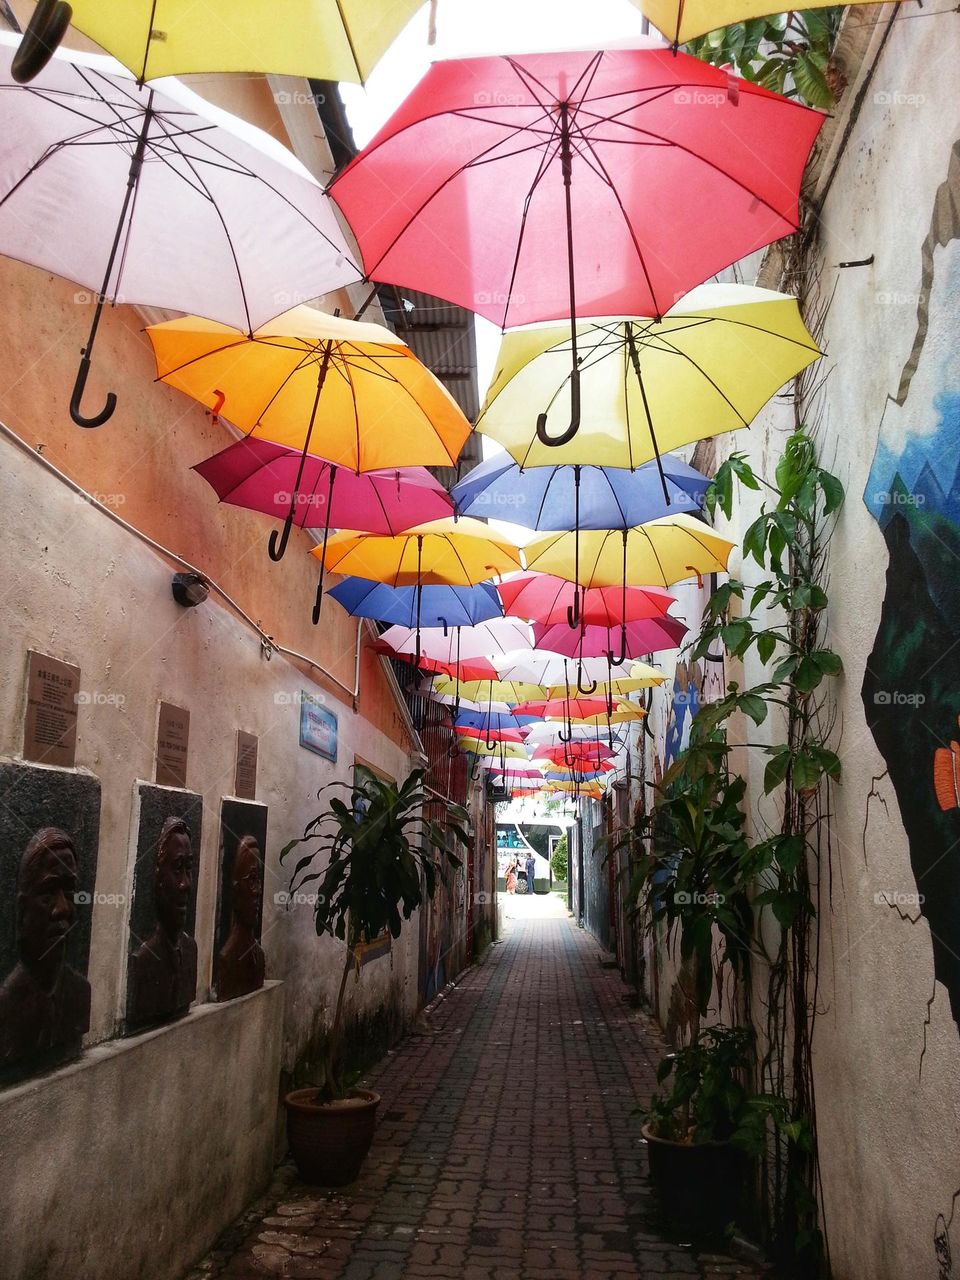 Umbrella alley in Kuala Terengganu, Malaysia